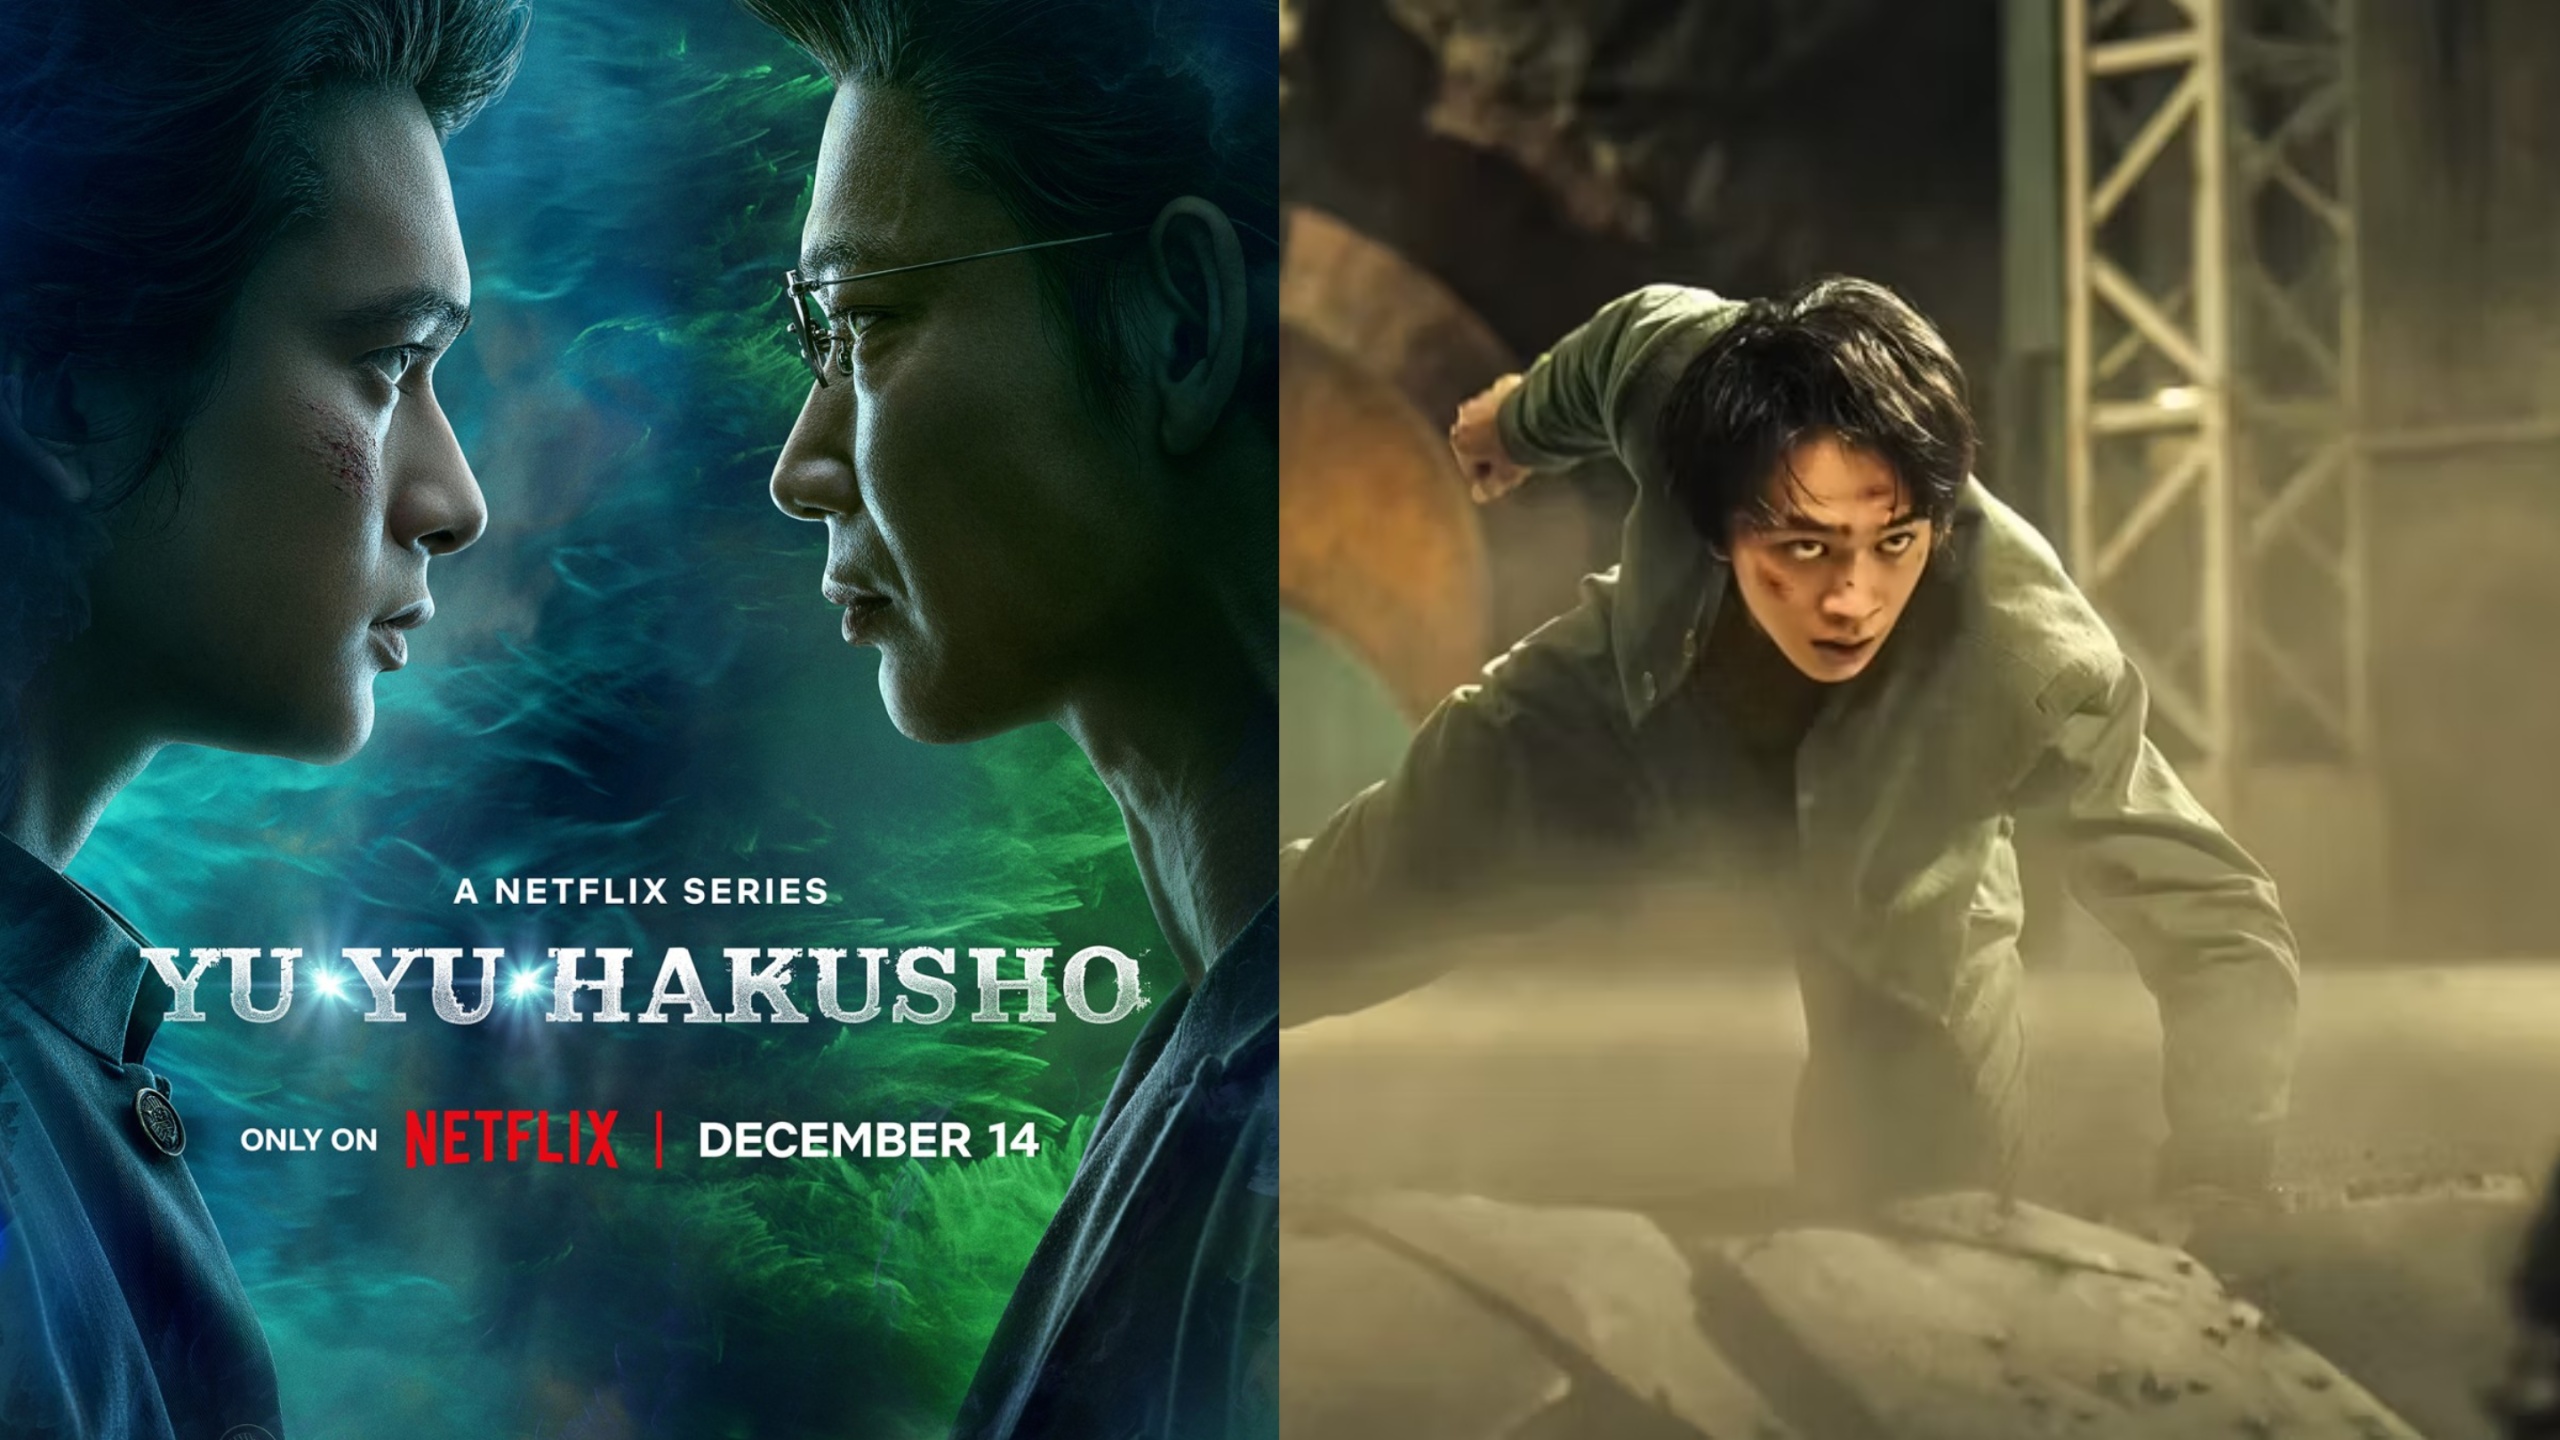 Netflix’s live-action adaptation of Yu Yu Hakusho